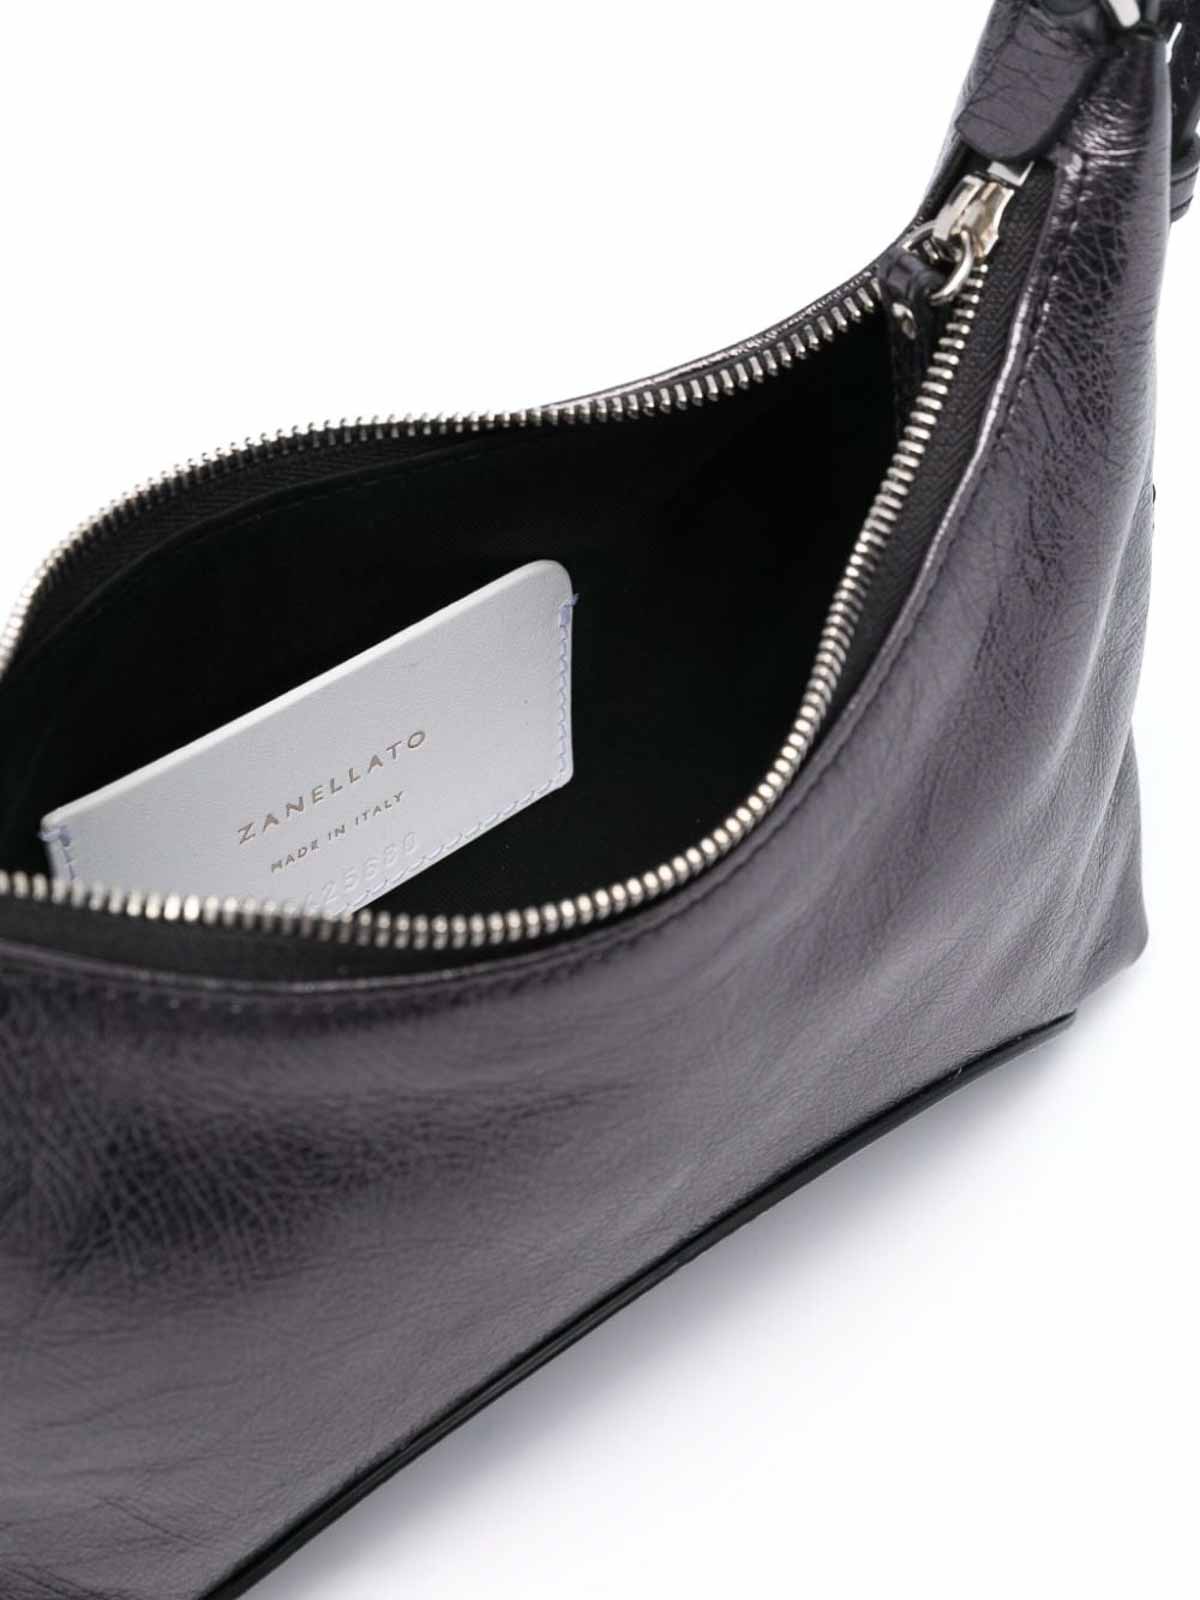 Shop Zanellato Mita Leather Shoulder Bag In Black